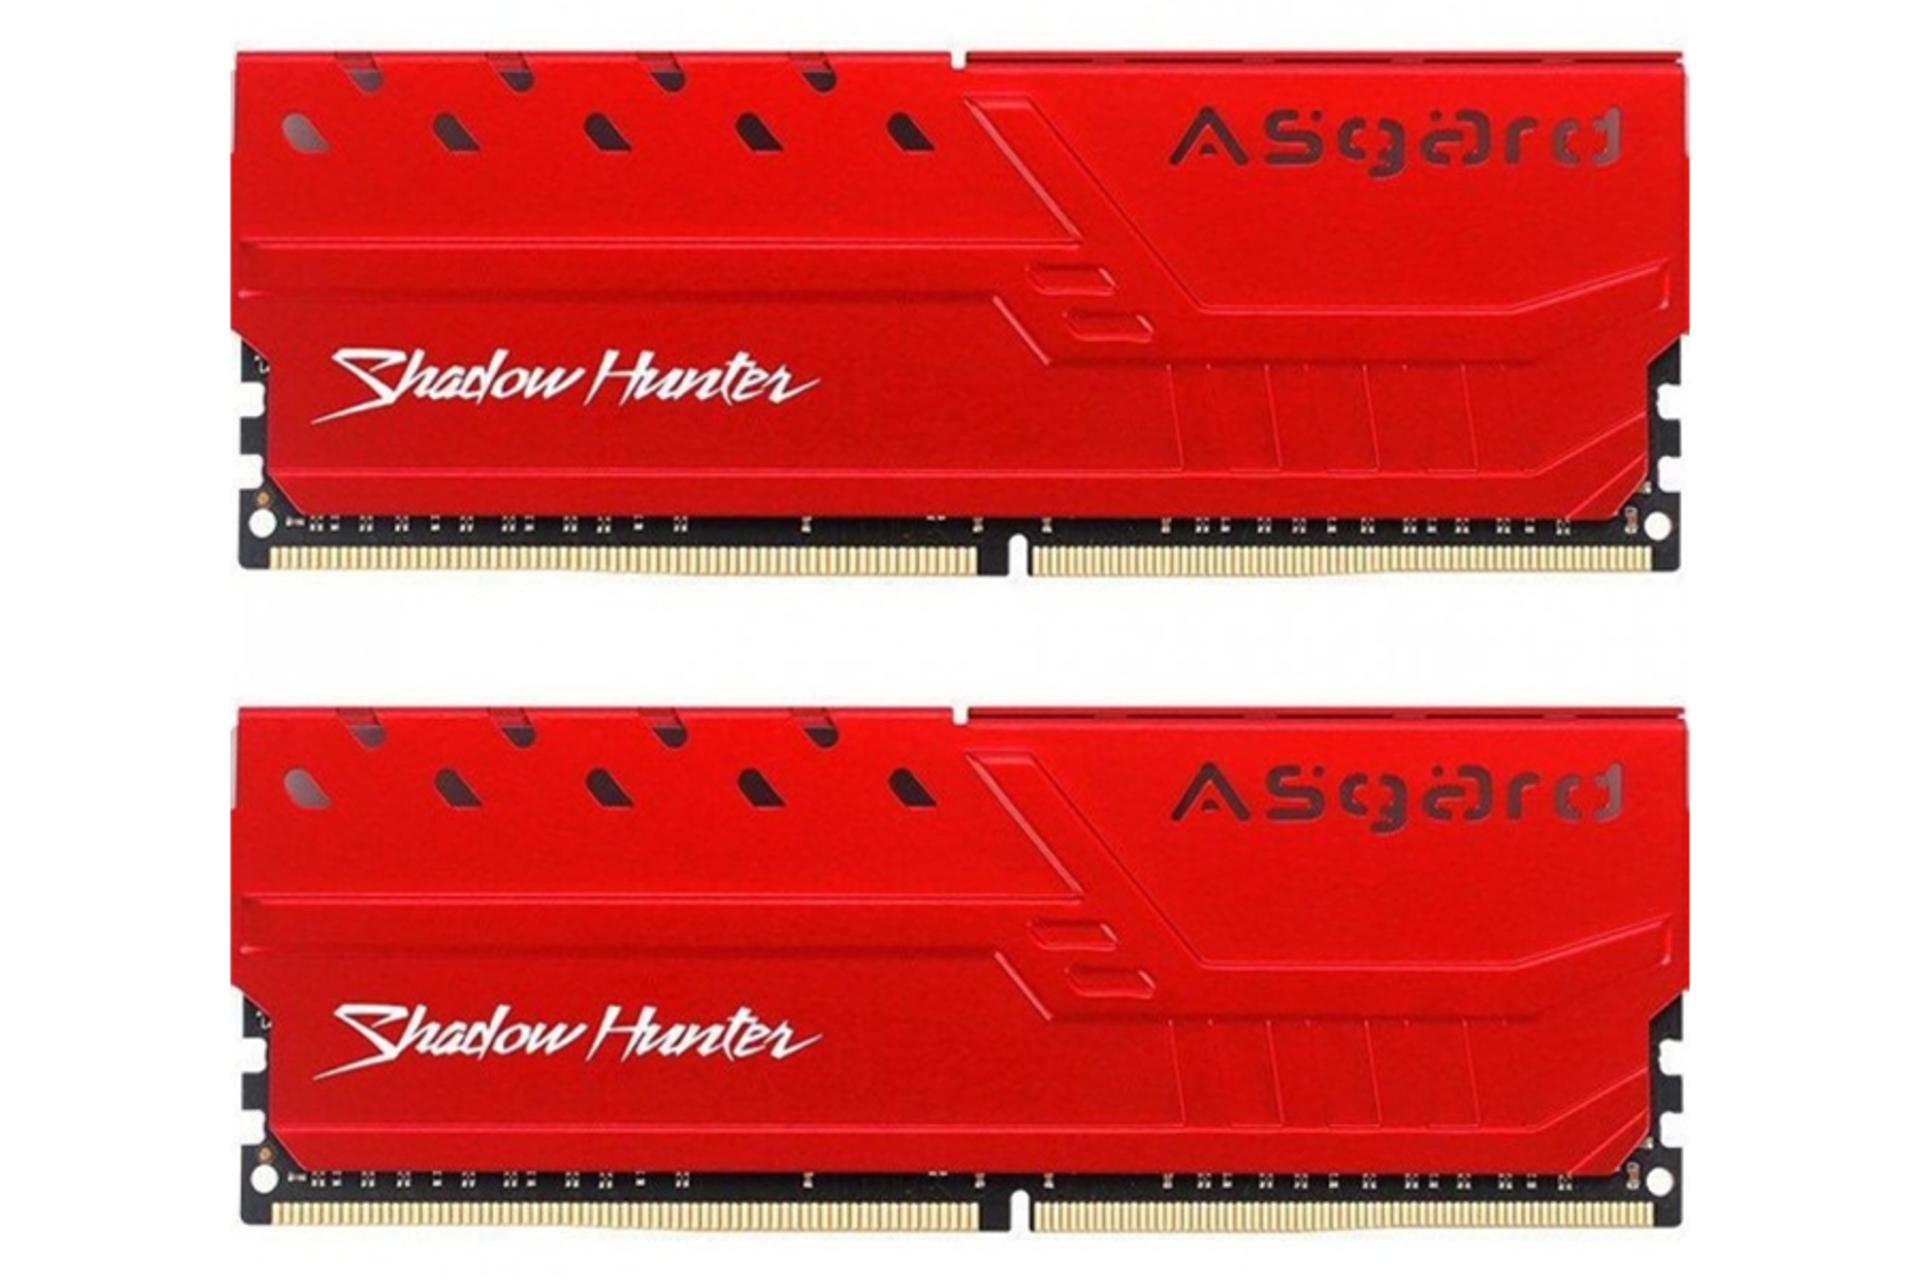 رم ازگارد Shadow Hunter ظرفیت 16 گیگابایت (2x8) از نوع DDR4-3000